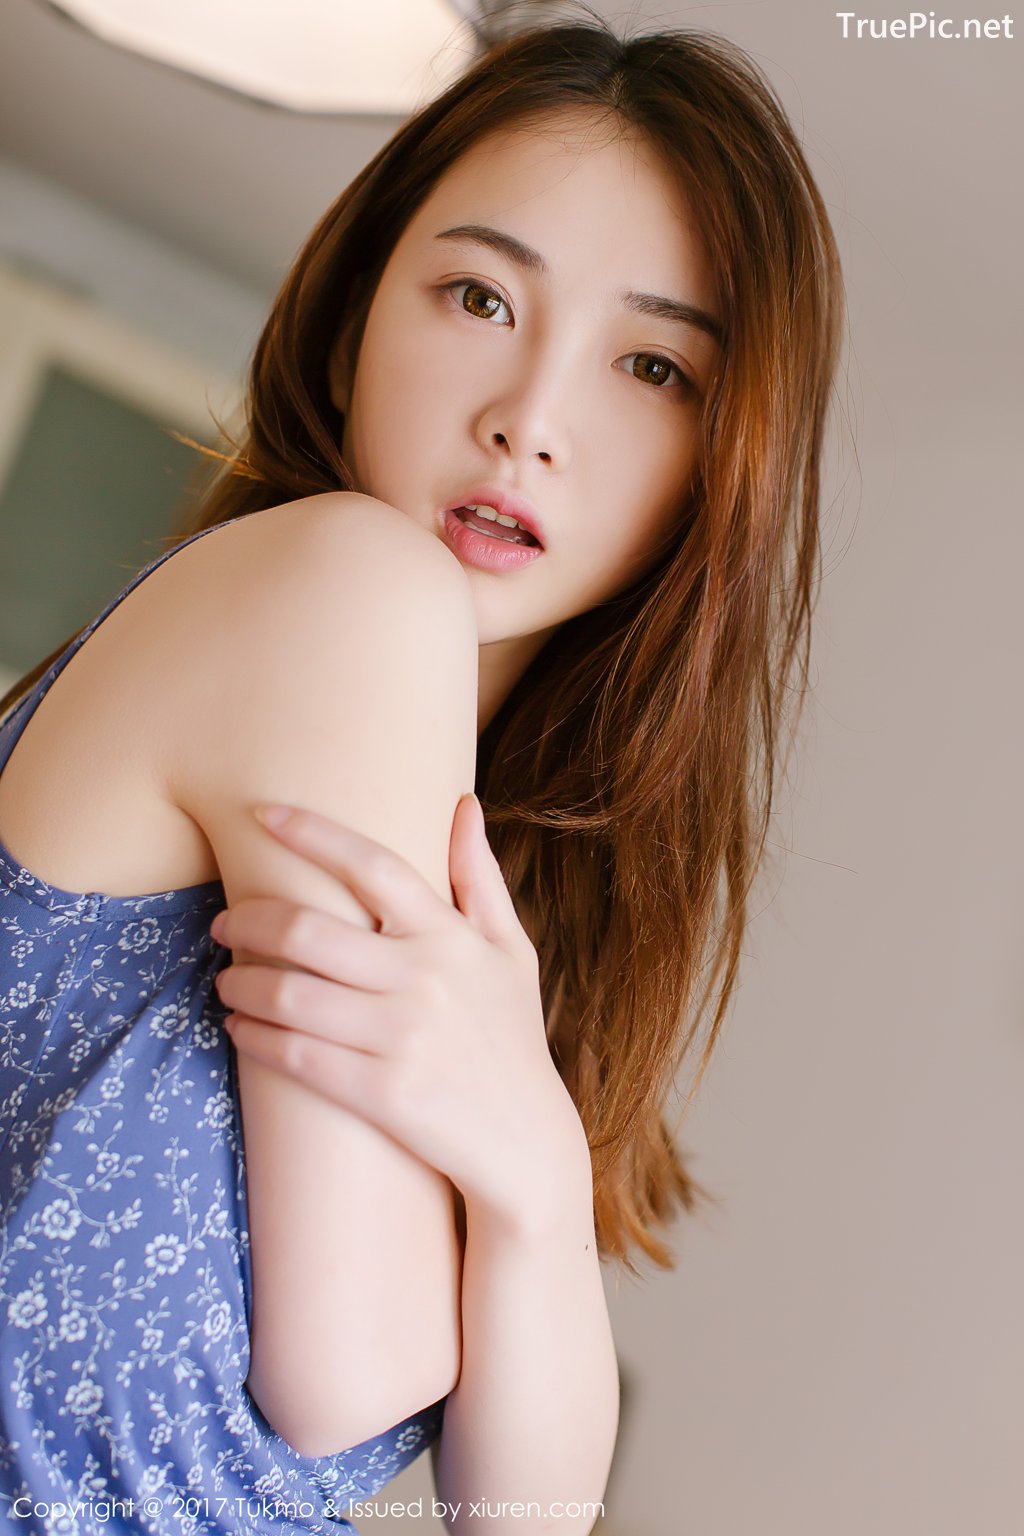 Image-Tukmo-Vol-096-Model-Mian-Mian-绵绵-Cute-Cherry-Girl-TruePic.net- Picture-25